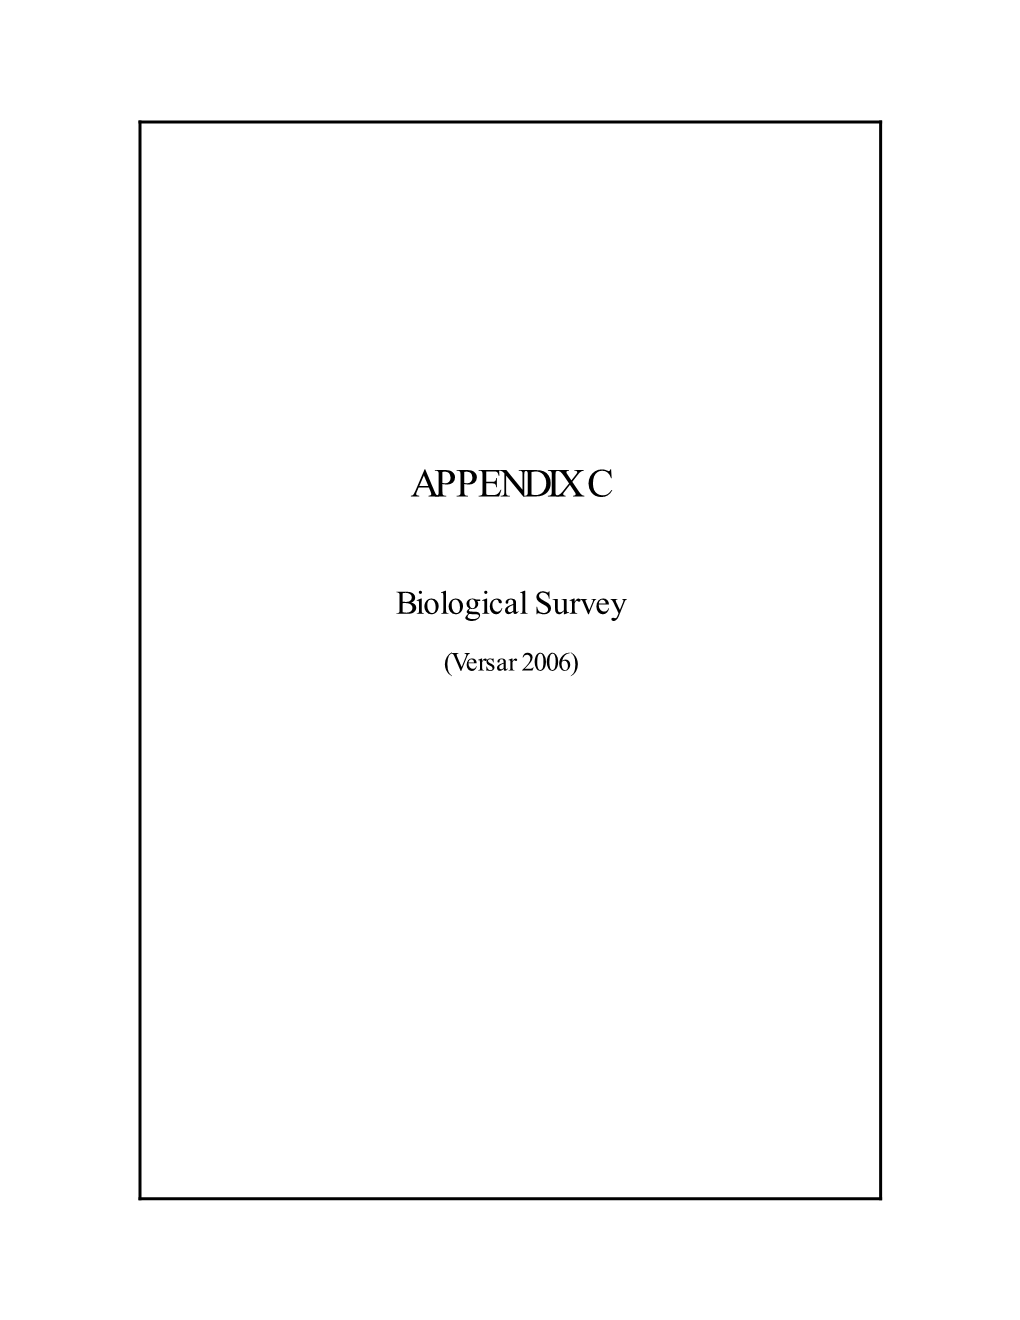 Appendix C, Biological Survey